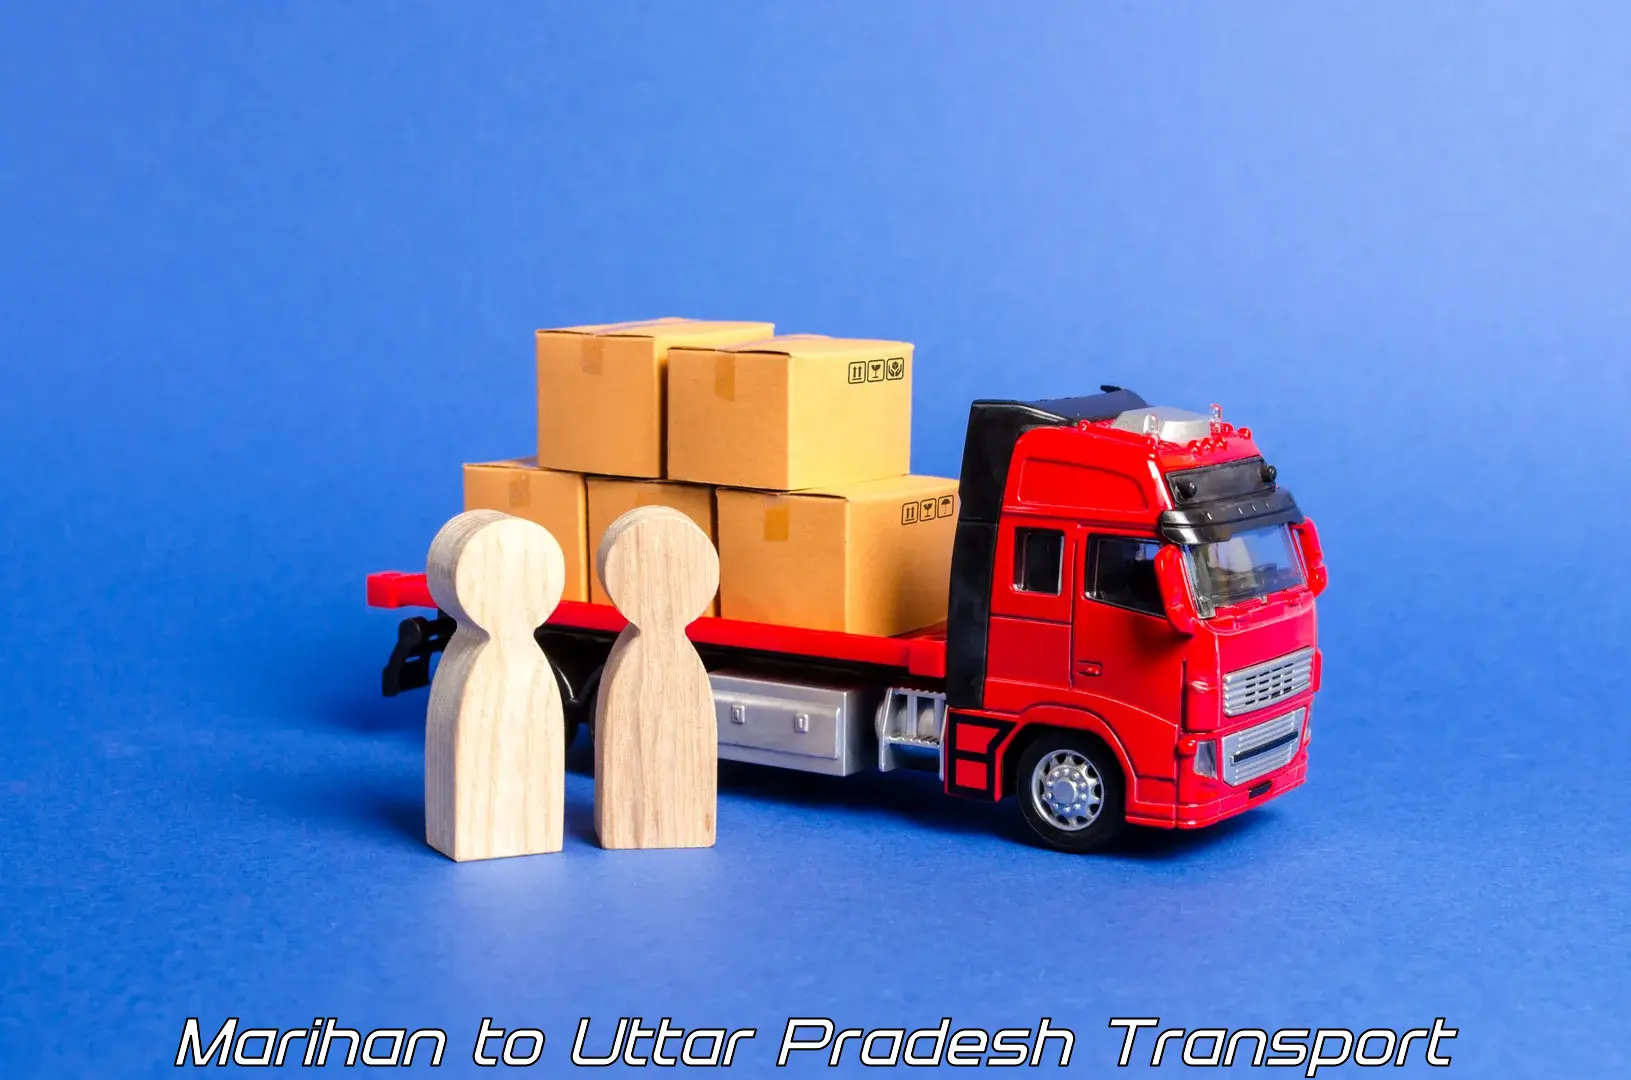 Pick up transport service in Marihan to Uttar Pradesh